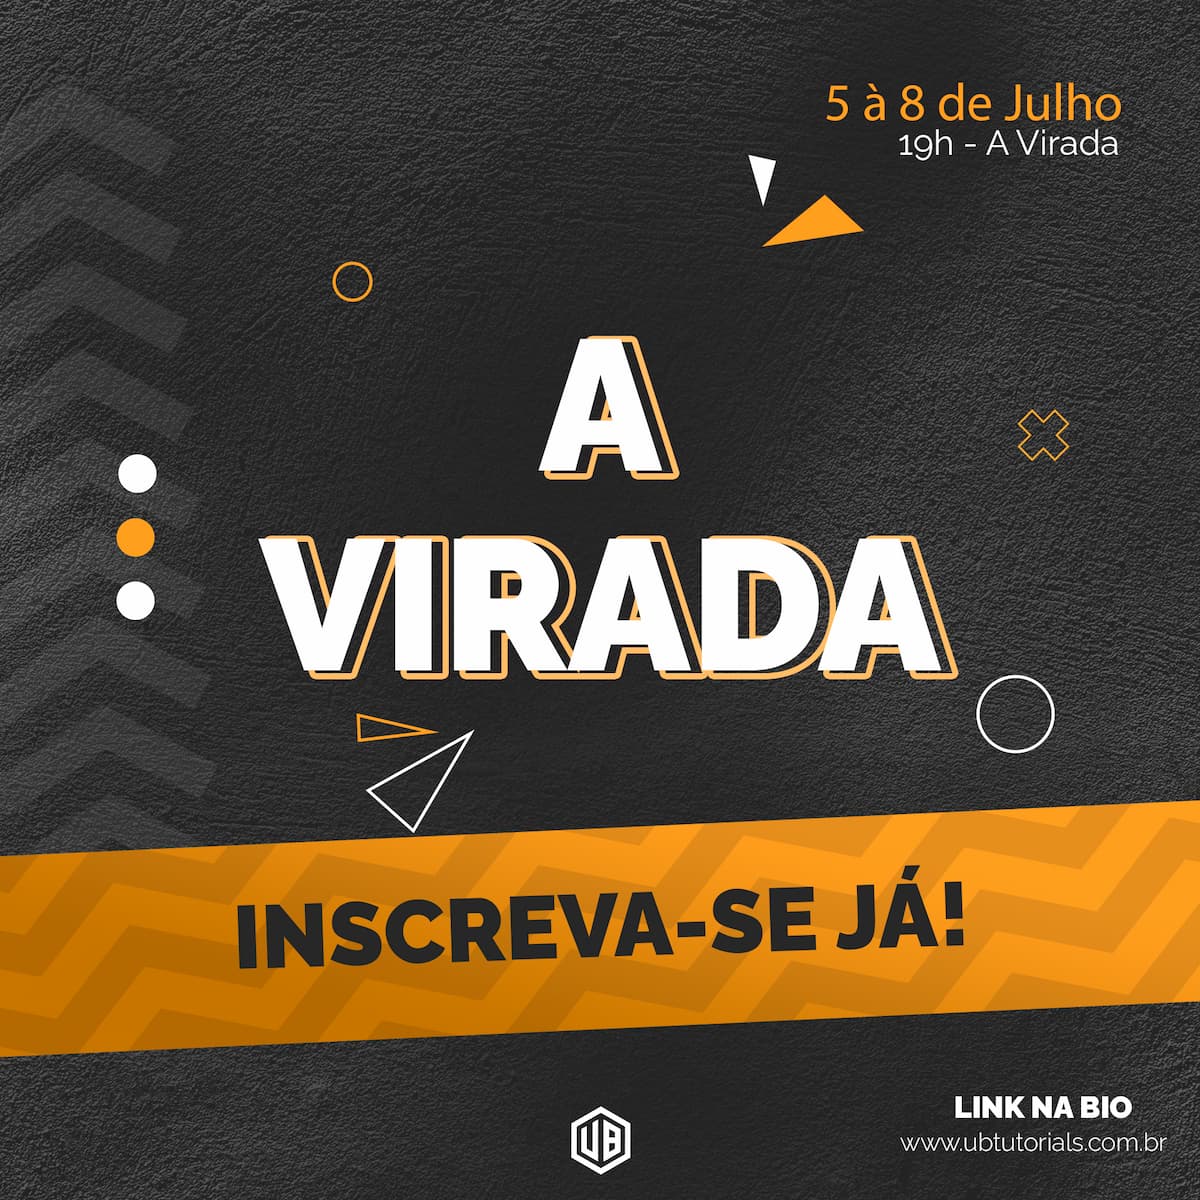 UB Tutorials lança evento virtual "A Virada" fomentando a produção musical no Brasil